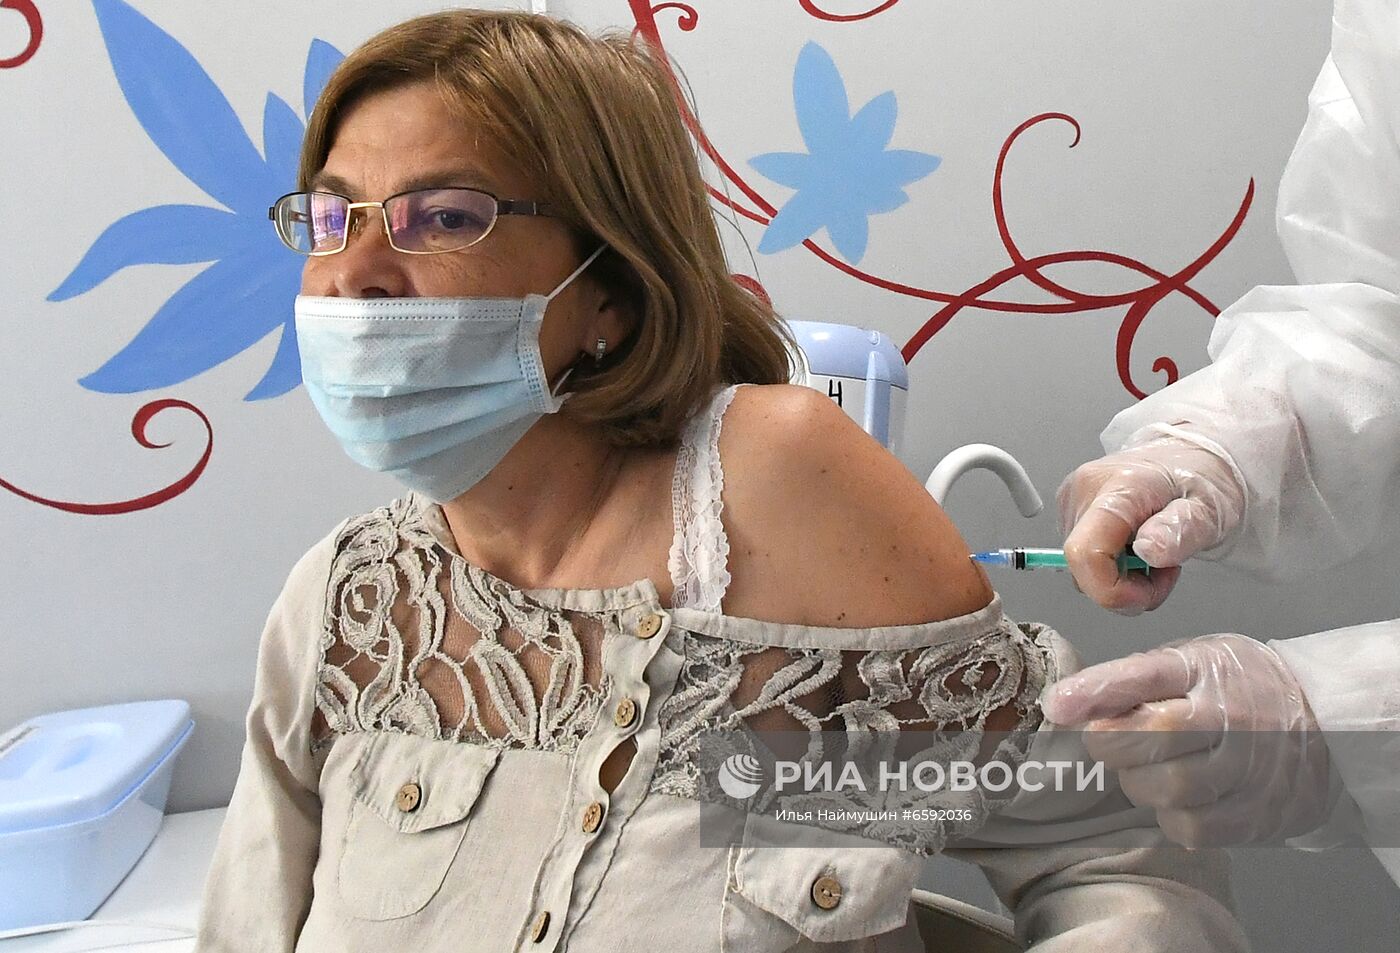 Пункт вакцинации в парке "Роев ручей" Красноярского края